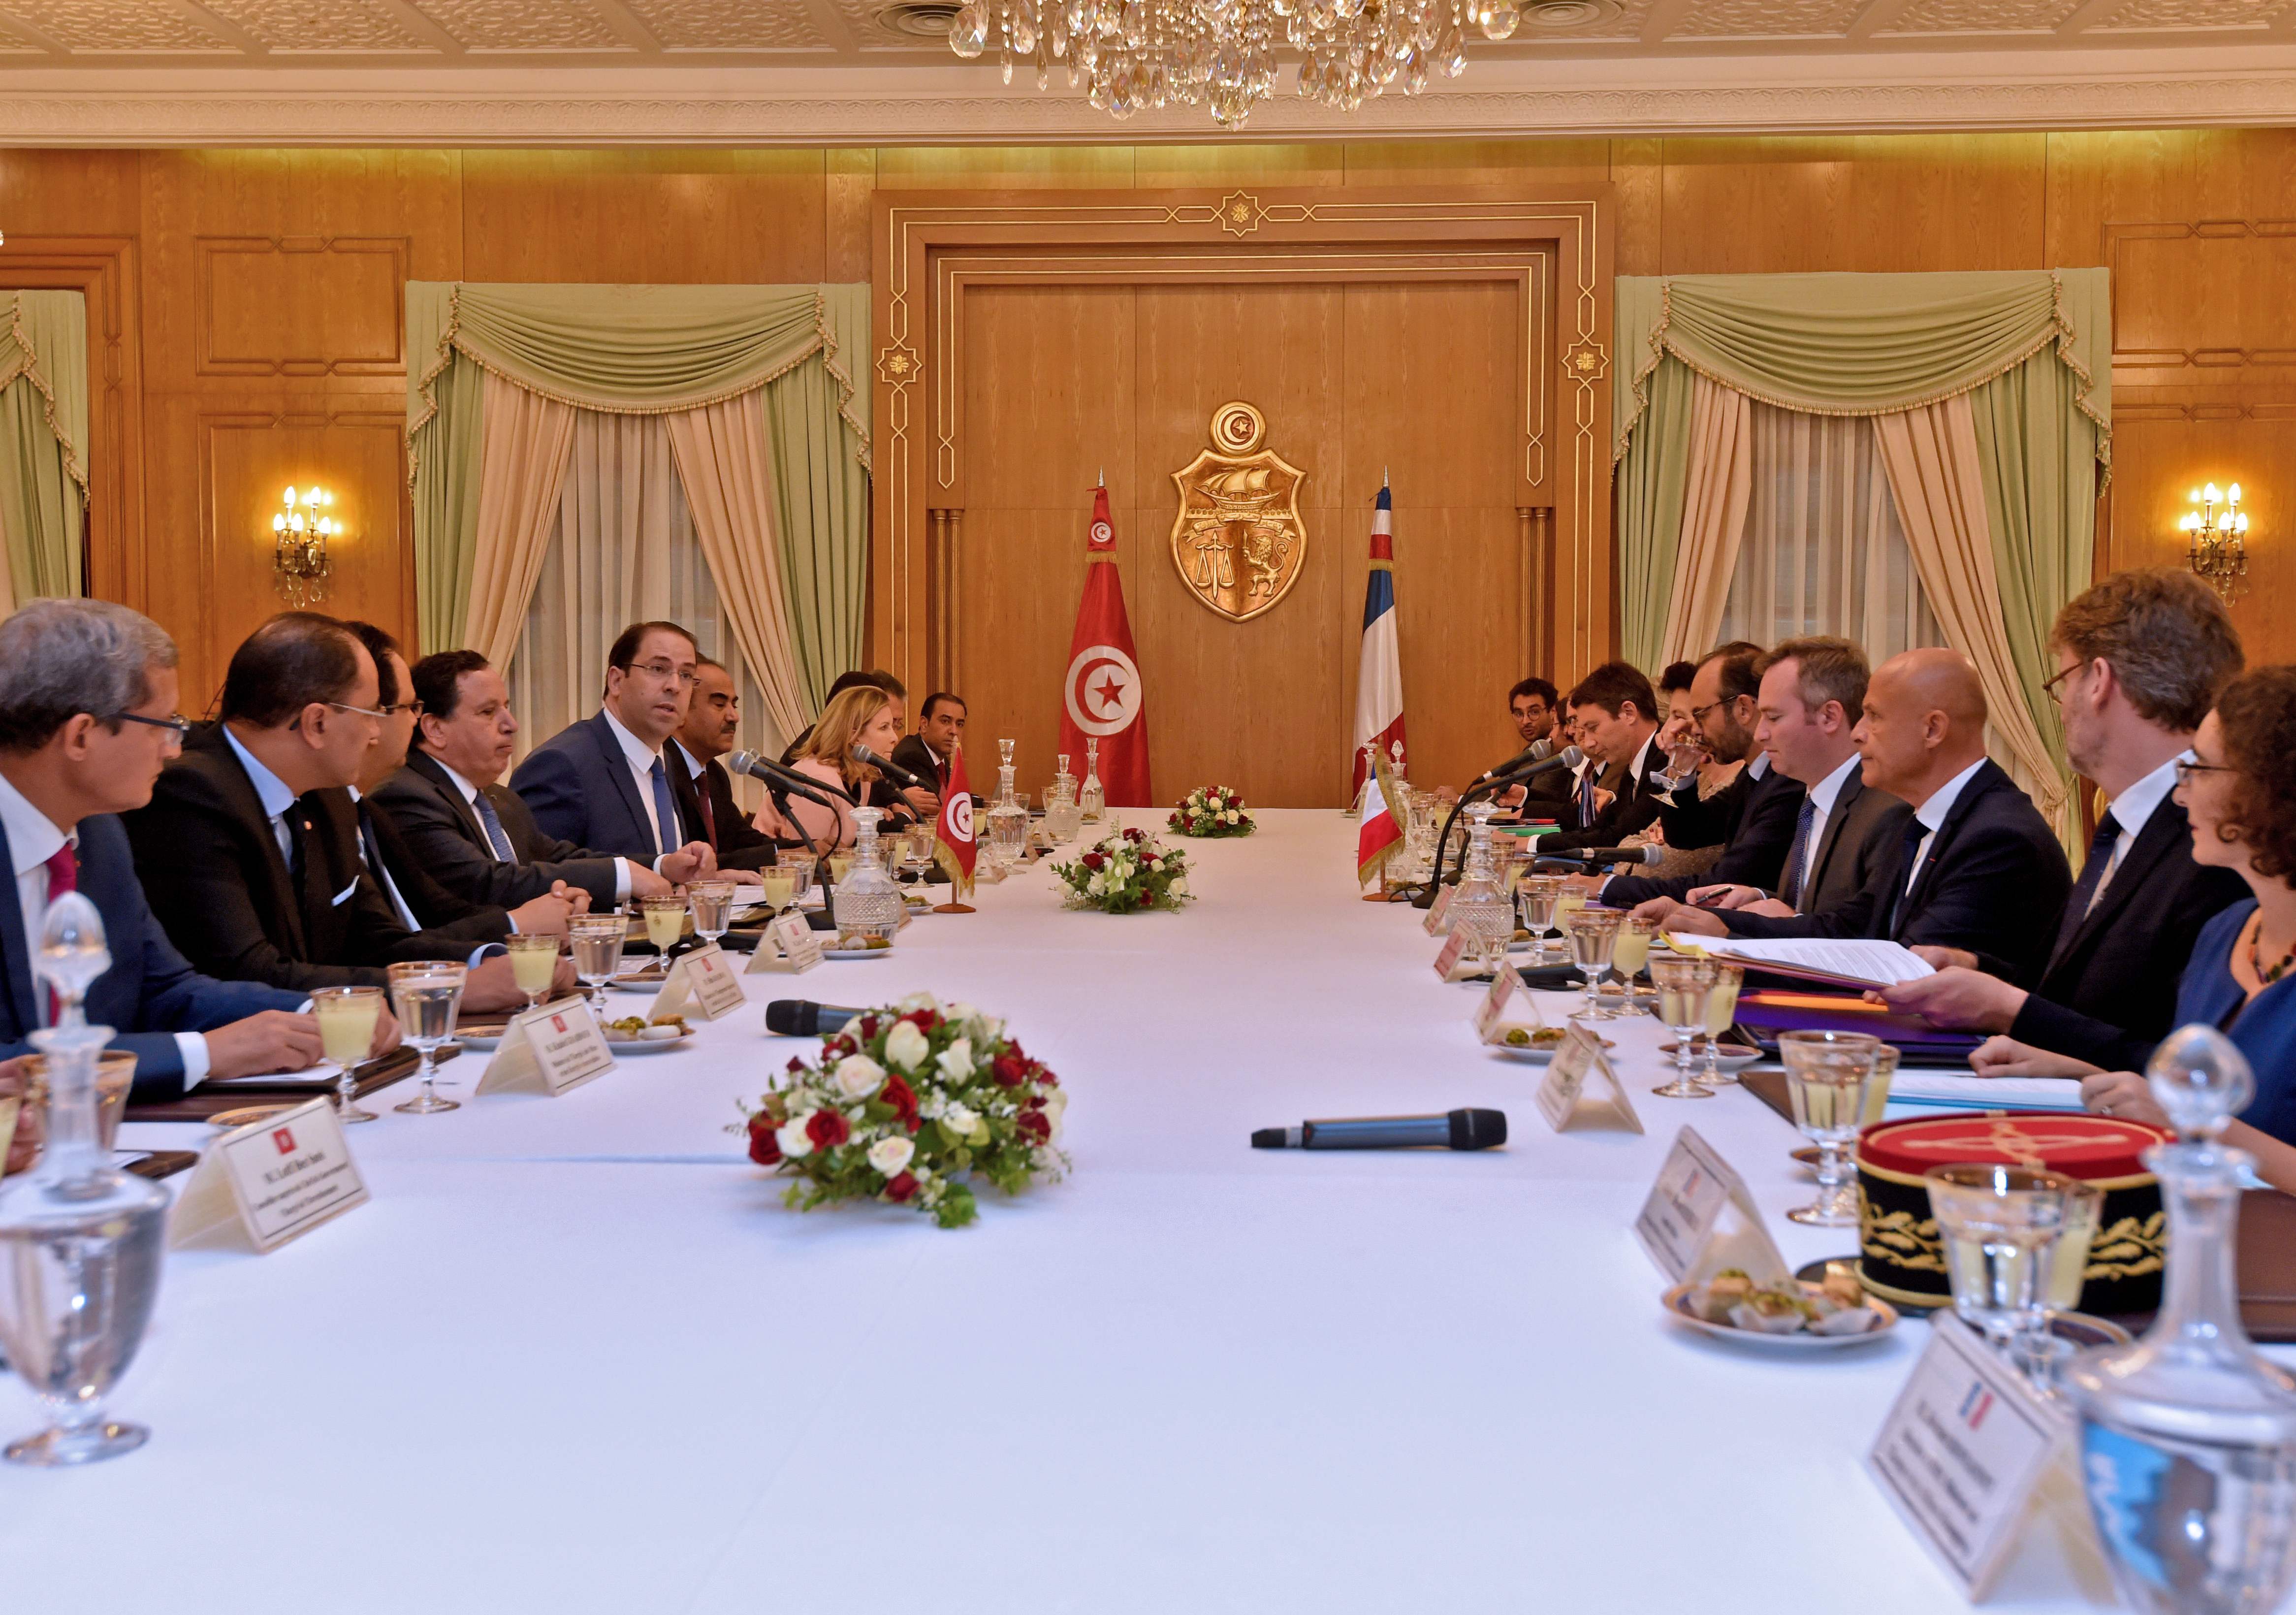 انطلاق الملتقى الاقتصادى فى تونس بمشاركة رئيس وزراء فرنسا